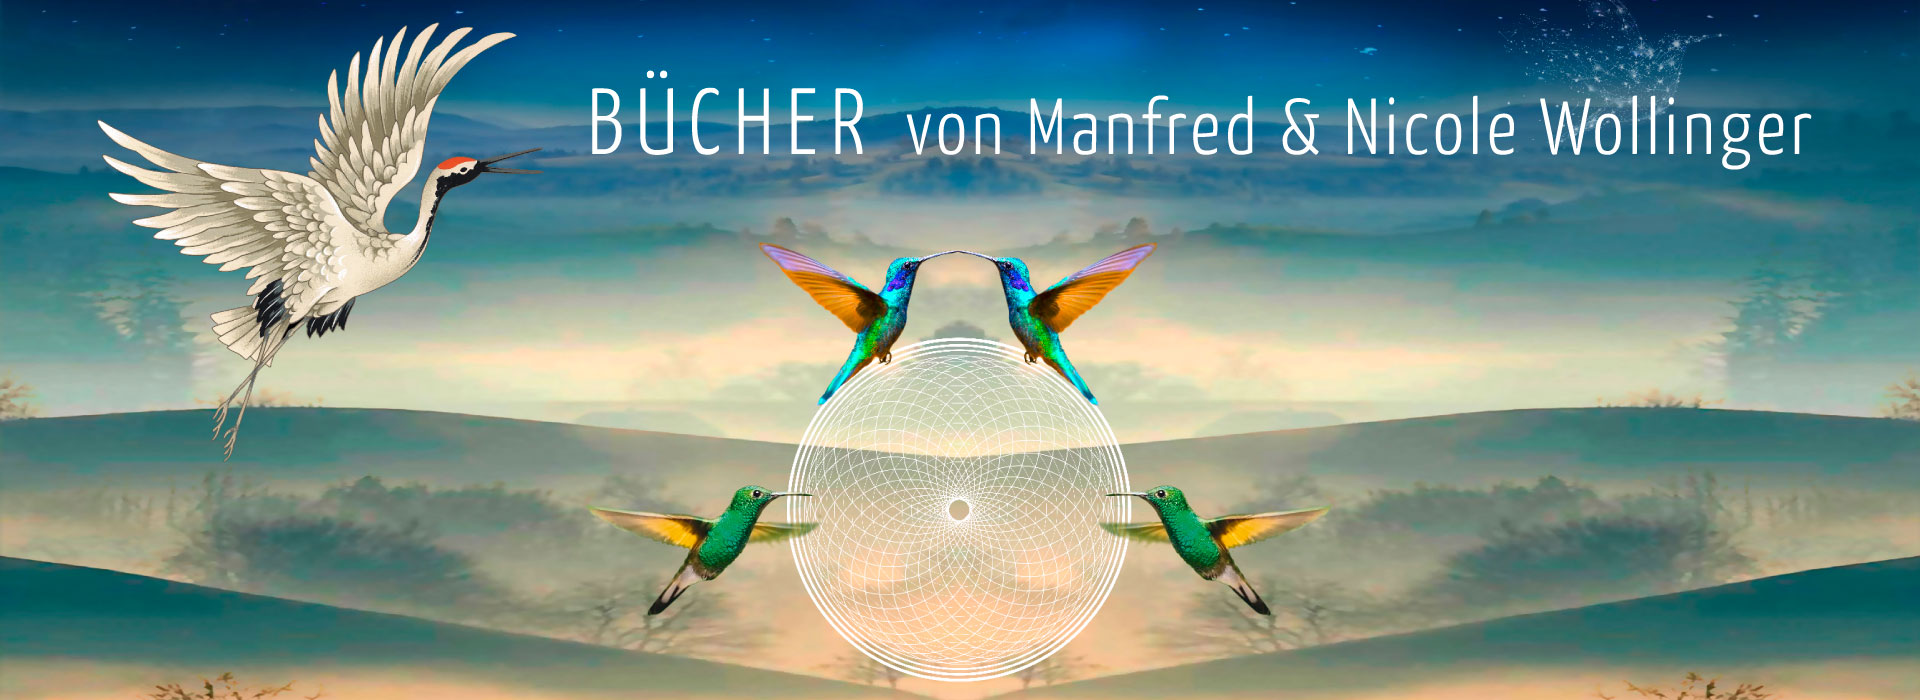 Bücher-Manfred-Wollinger